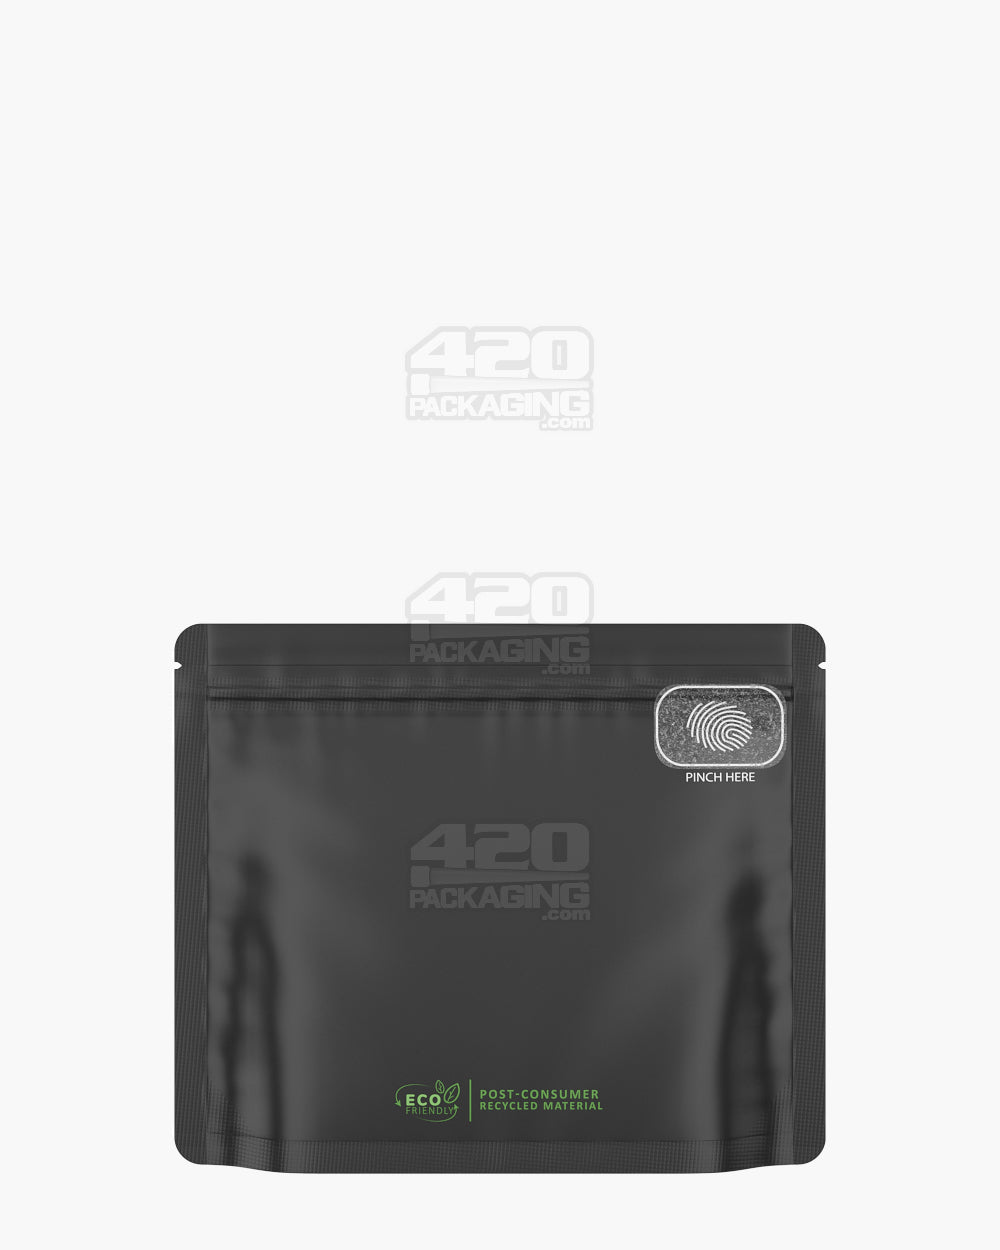 Matte-Black 8" x 6.7" PCR Mylar Pinch N Slide 3.0 Child Resistant & Tamper Evident Exit Bags (28 grams) 250/Box